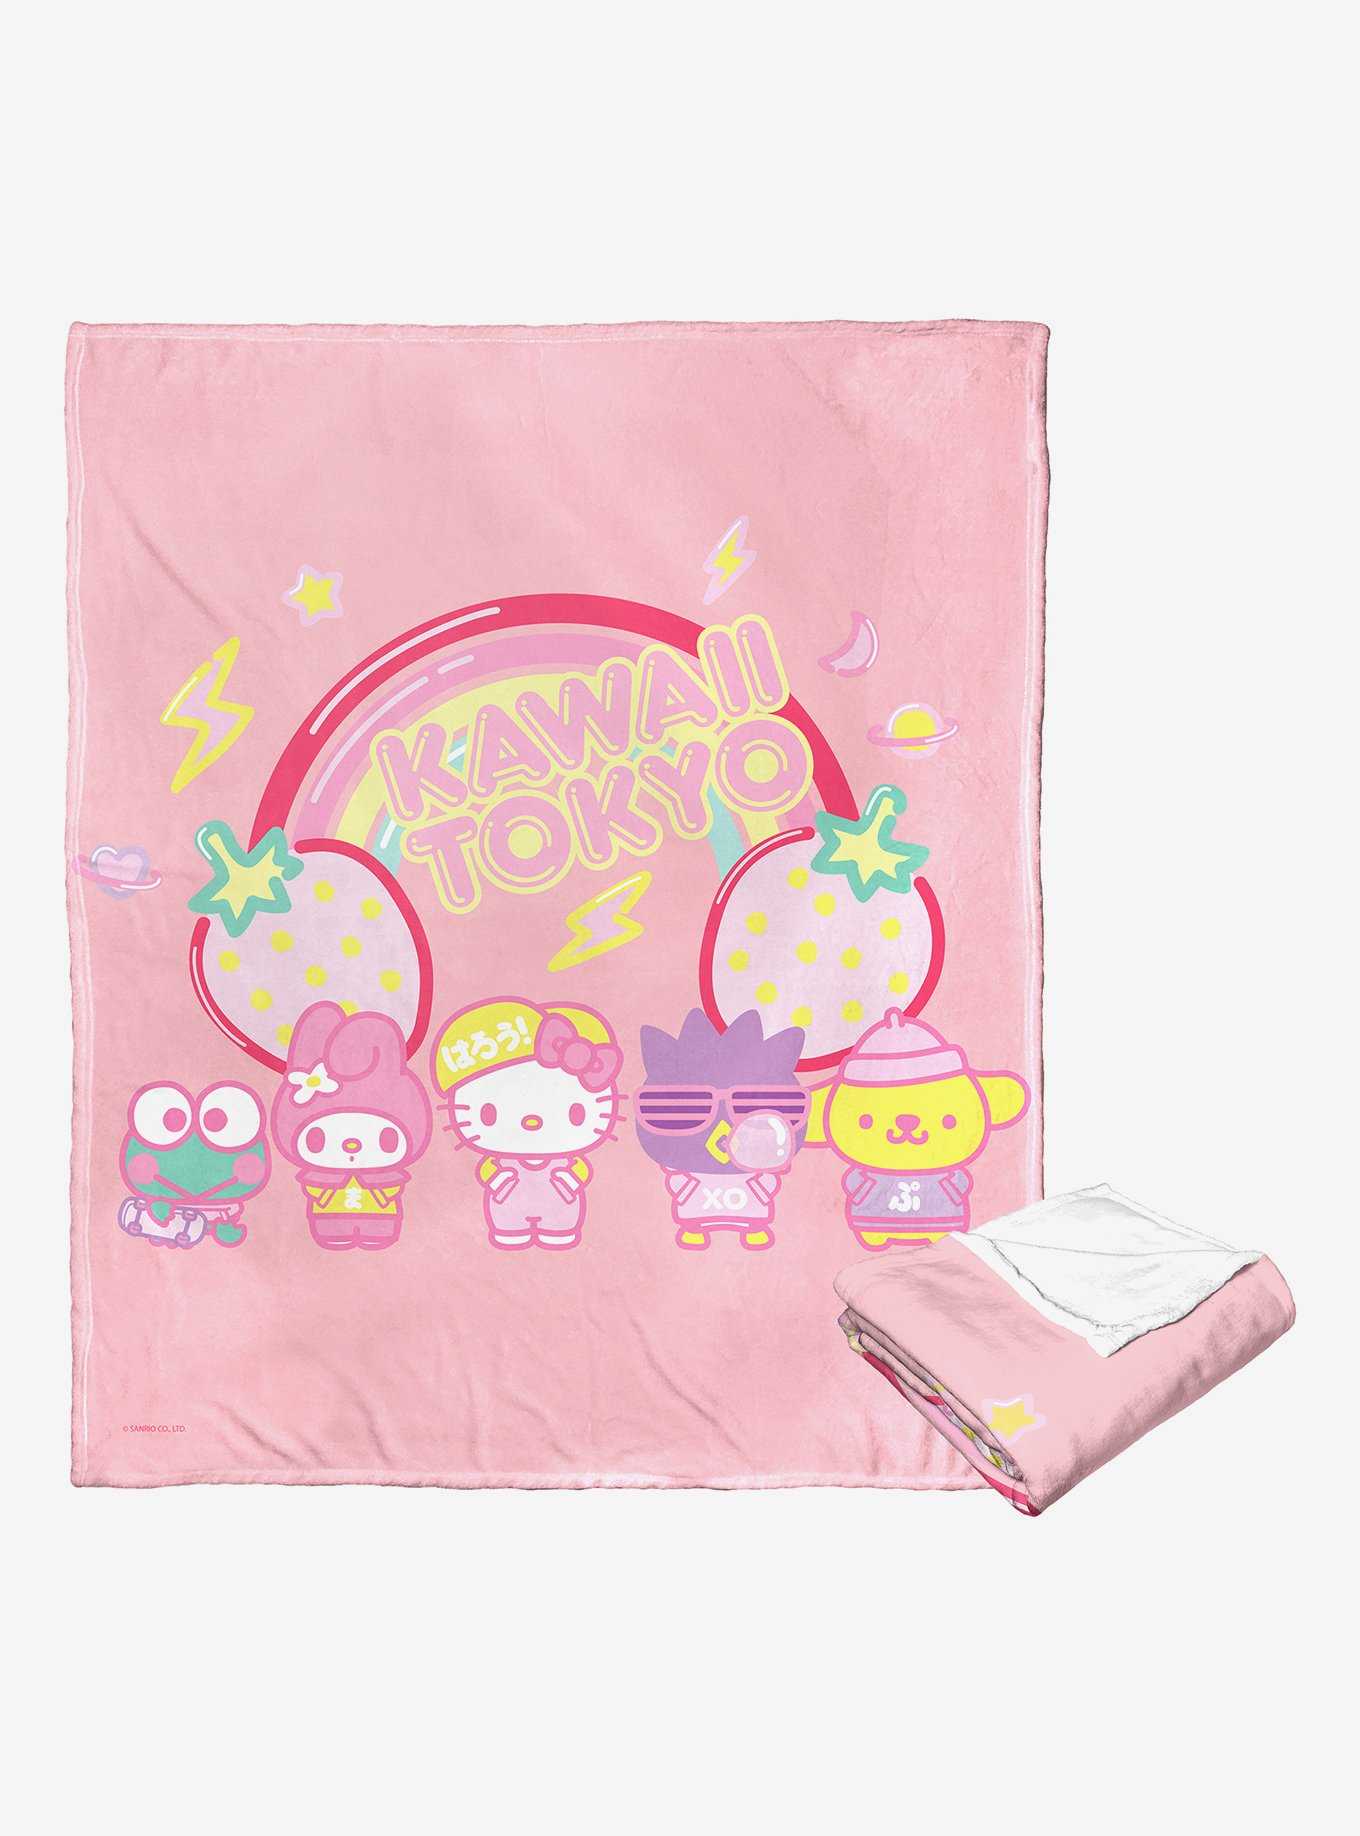 Sanrio Hello Kitty Fashion Friends Throw Blanket, , hi-res